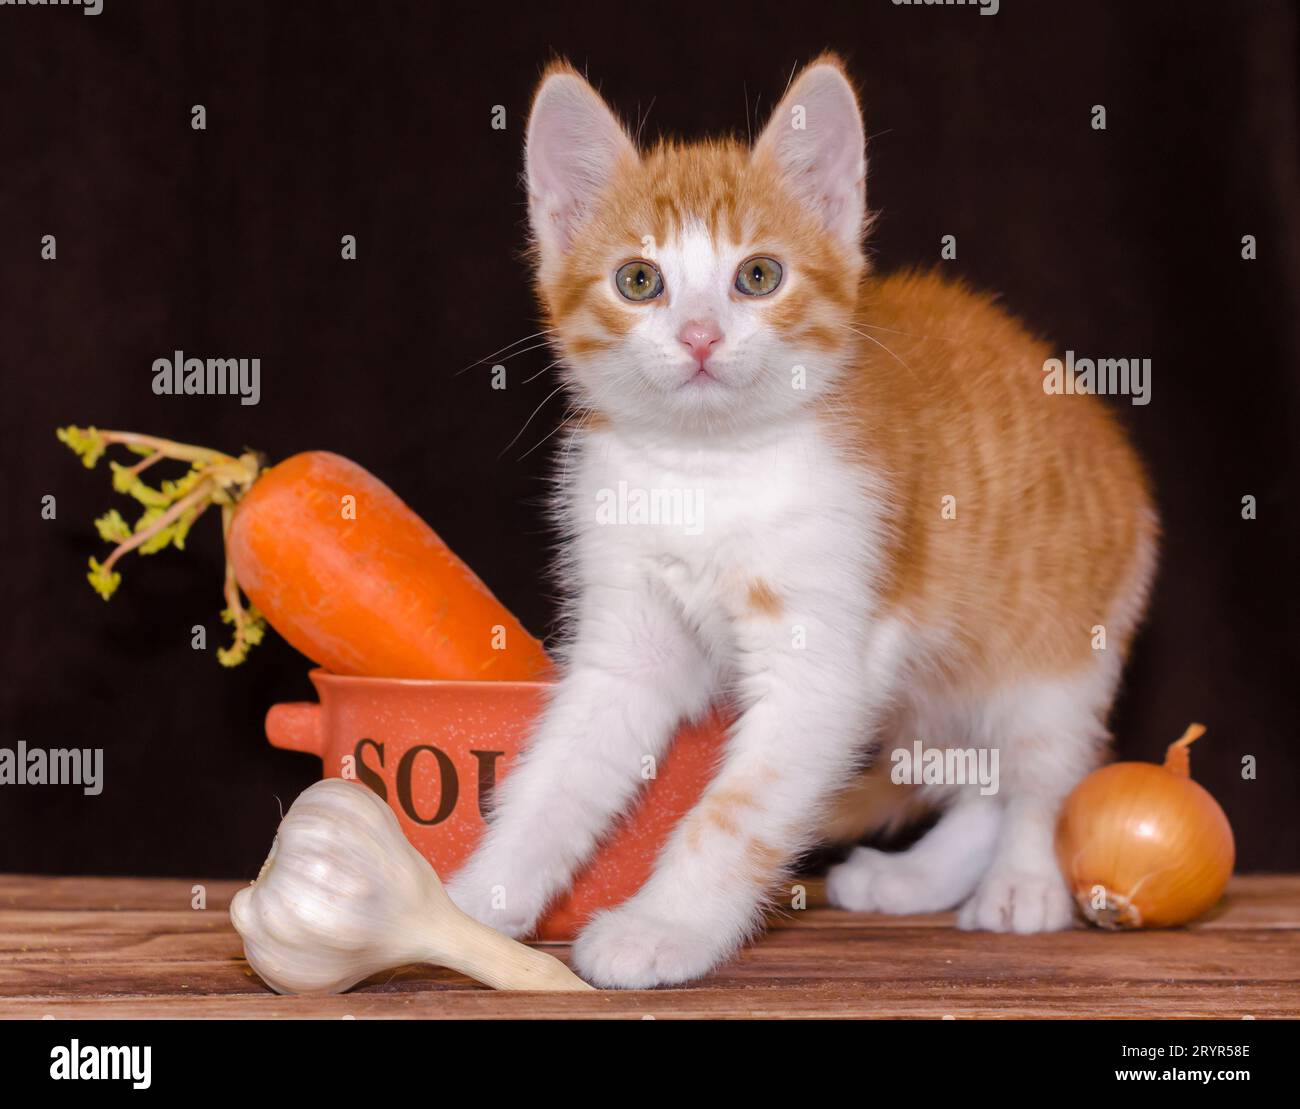 Kleines rotes Kätzchen sitzt auf den rauen Holzbrettern des Tisches neben einer orangen Schüssel für Suppe und Karotten mit grüner Platte Stockfoto